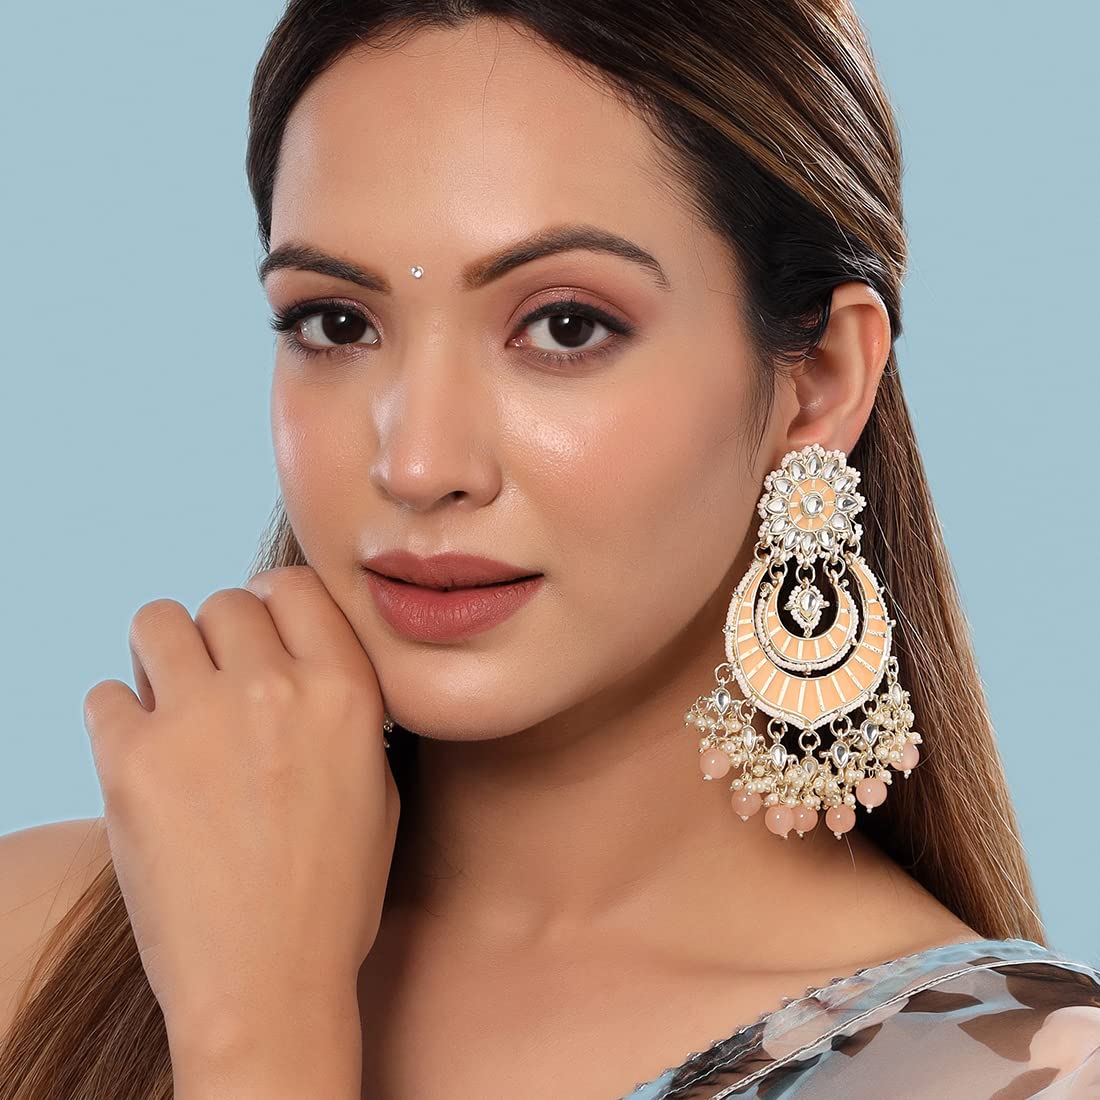 Yellow Chimes Earrings for Women and Girls Meenakari Chandbali | Gold Plated Pink Meenakari Chand Baliyan Earrings | Birthday Gift for girls and women Anniversary Gift for Wife